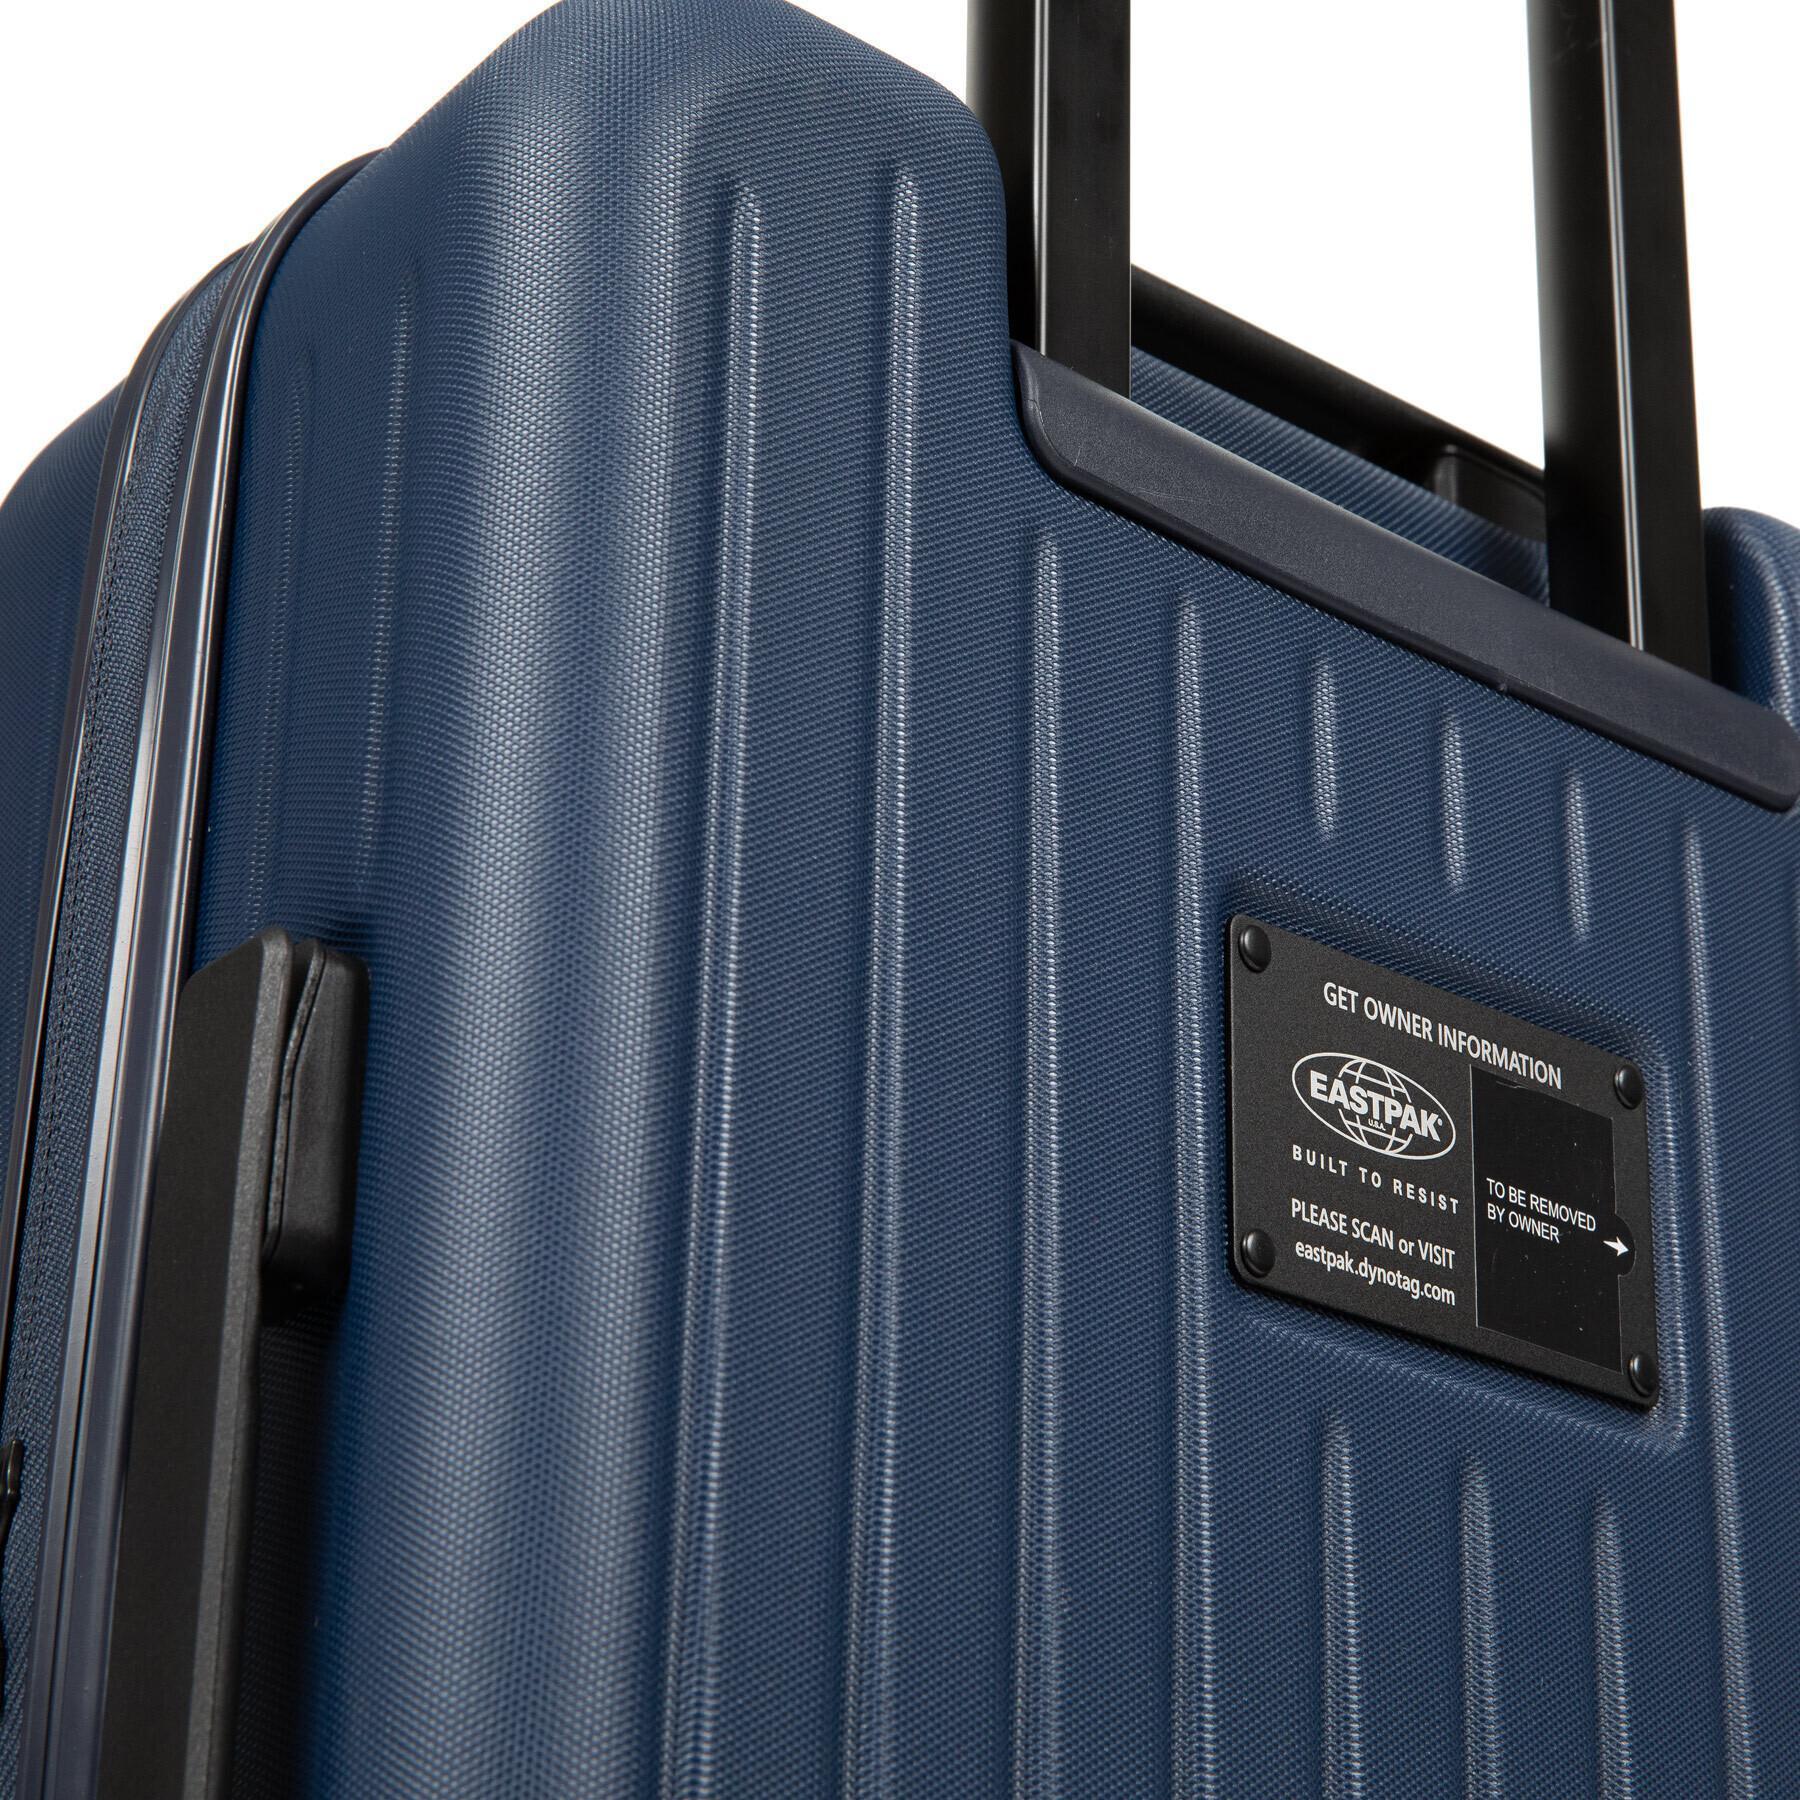 Suitcase Eastpak Case S